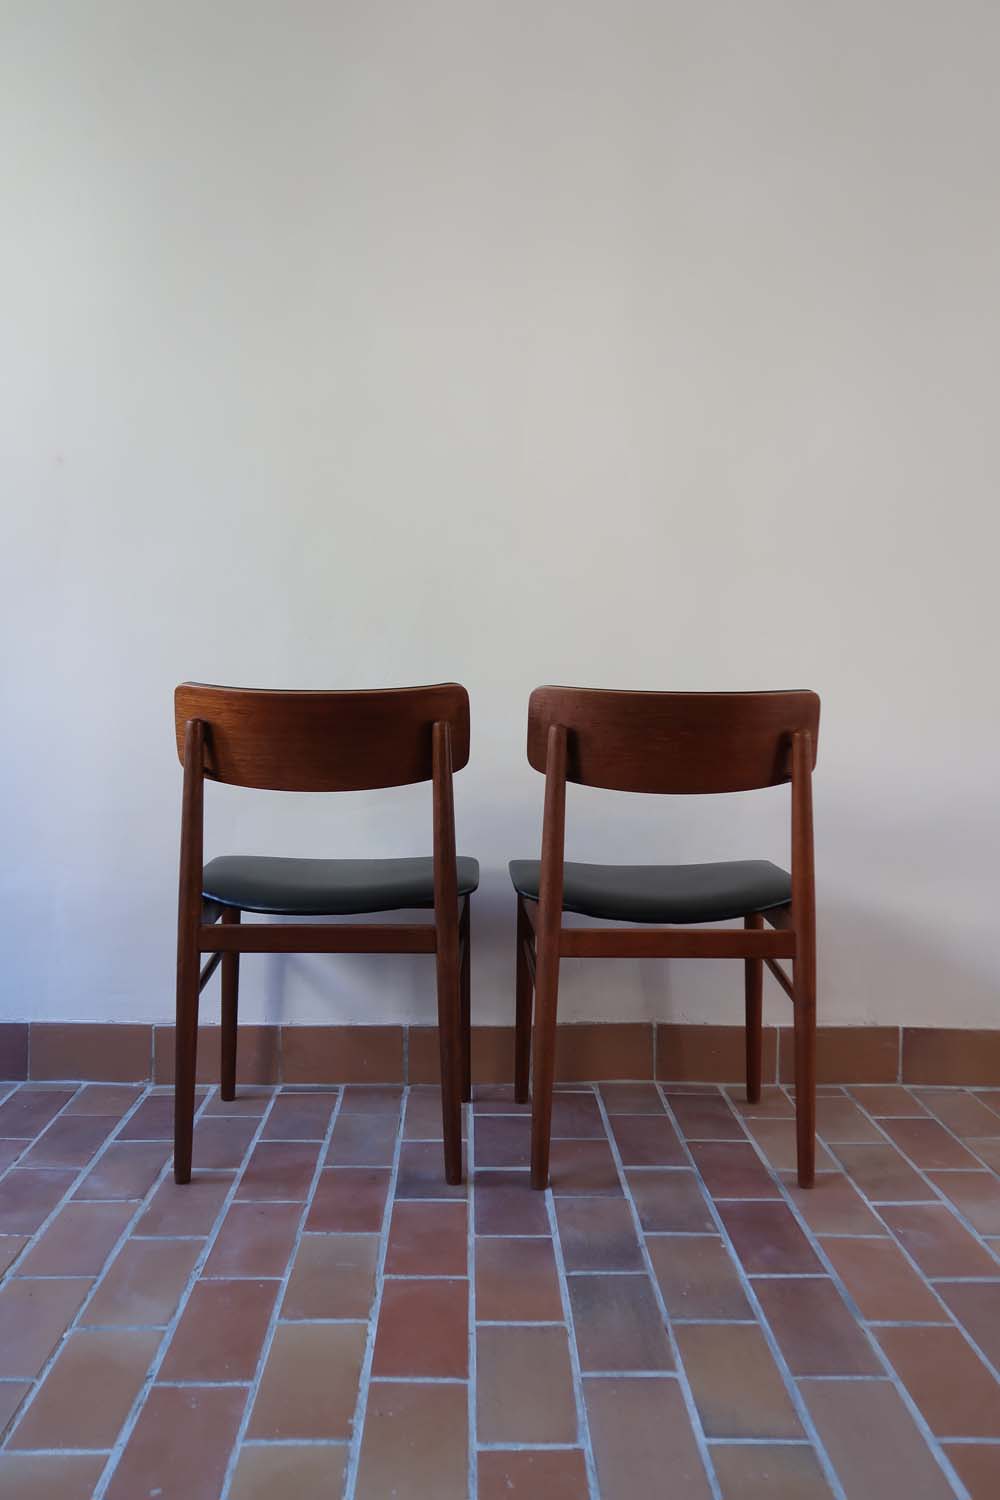 paire 2 chaises scandinave skaï noir vintage teck made in denmark Sax S Chrobat années 60